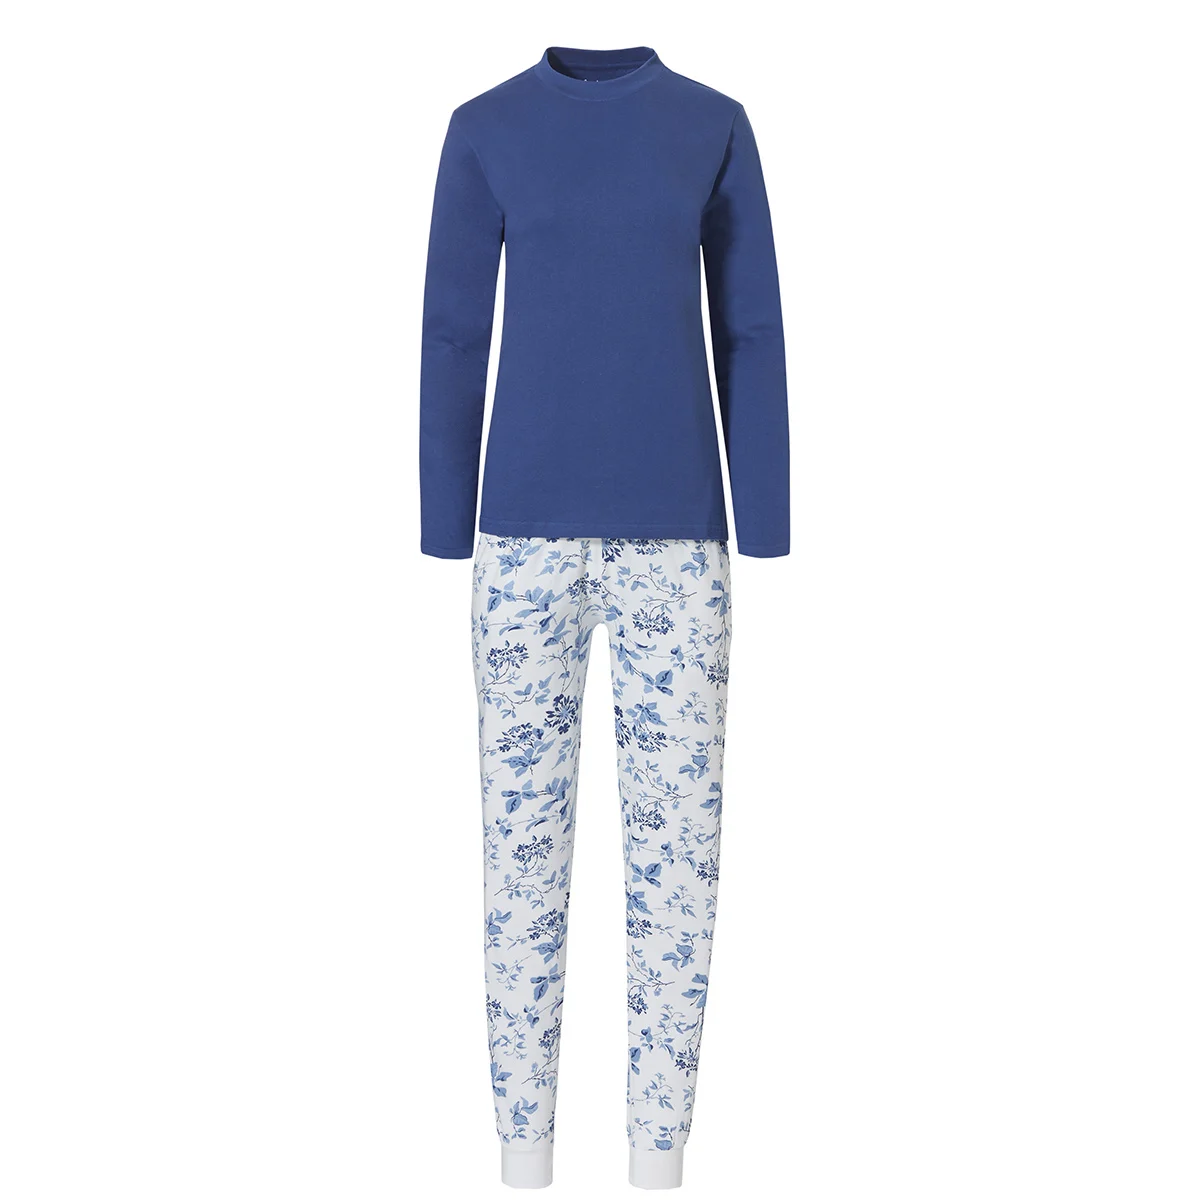 Afbeelding van By Louise Dames pyjama set interlock lange mouw + broek blauw / wit